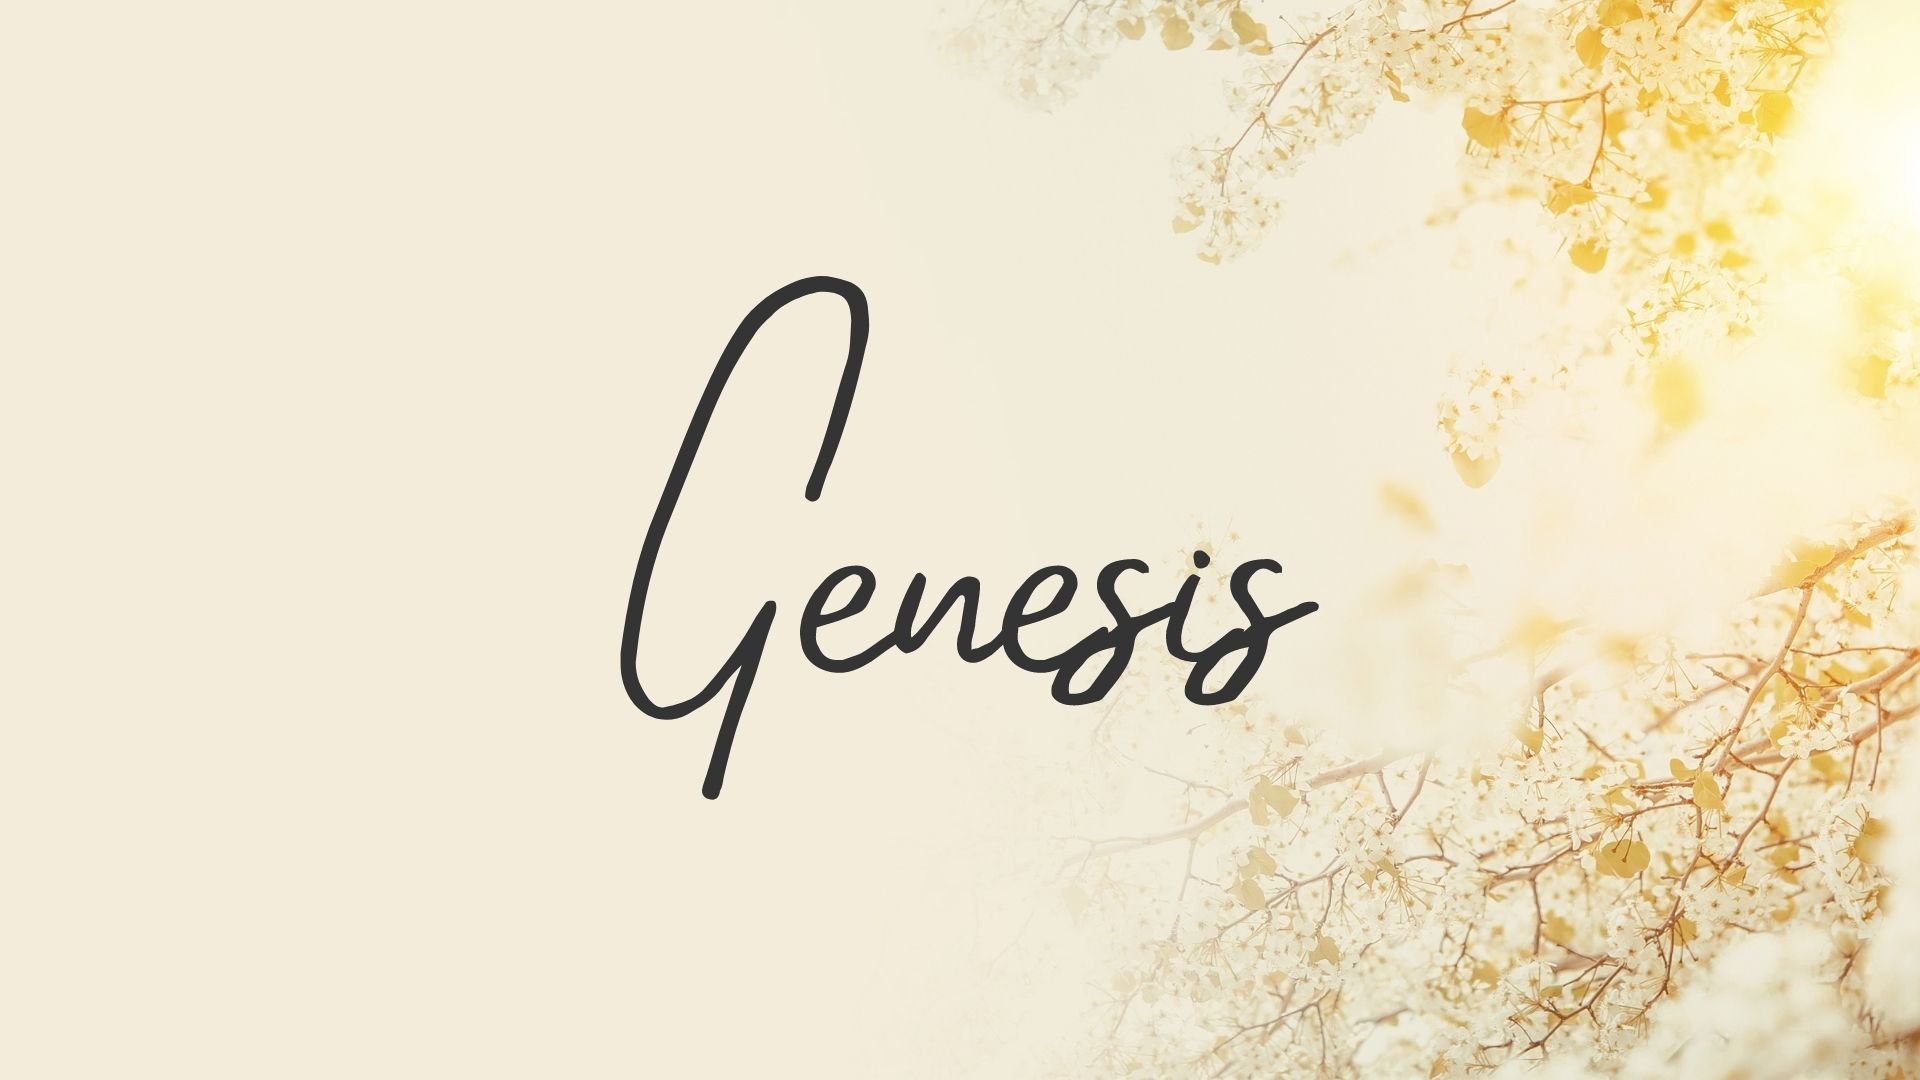 Genesis (1920 × 1080 px).jpg